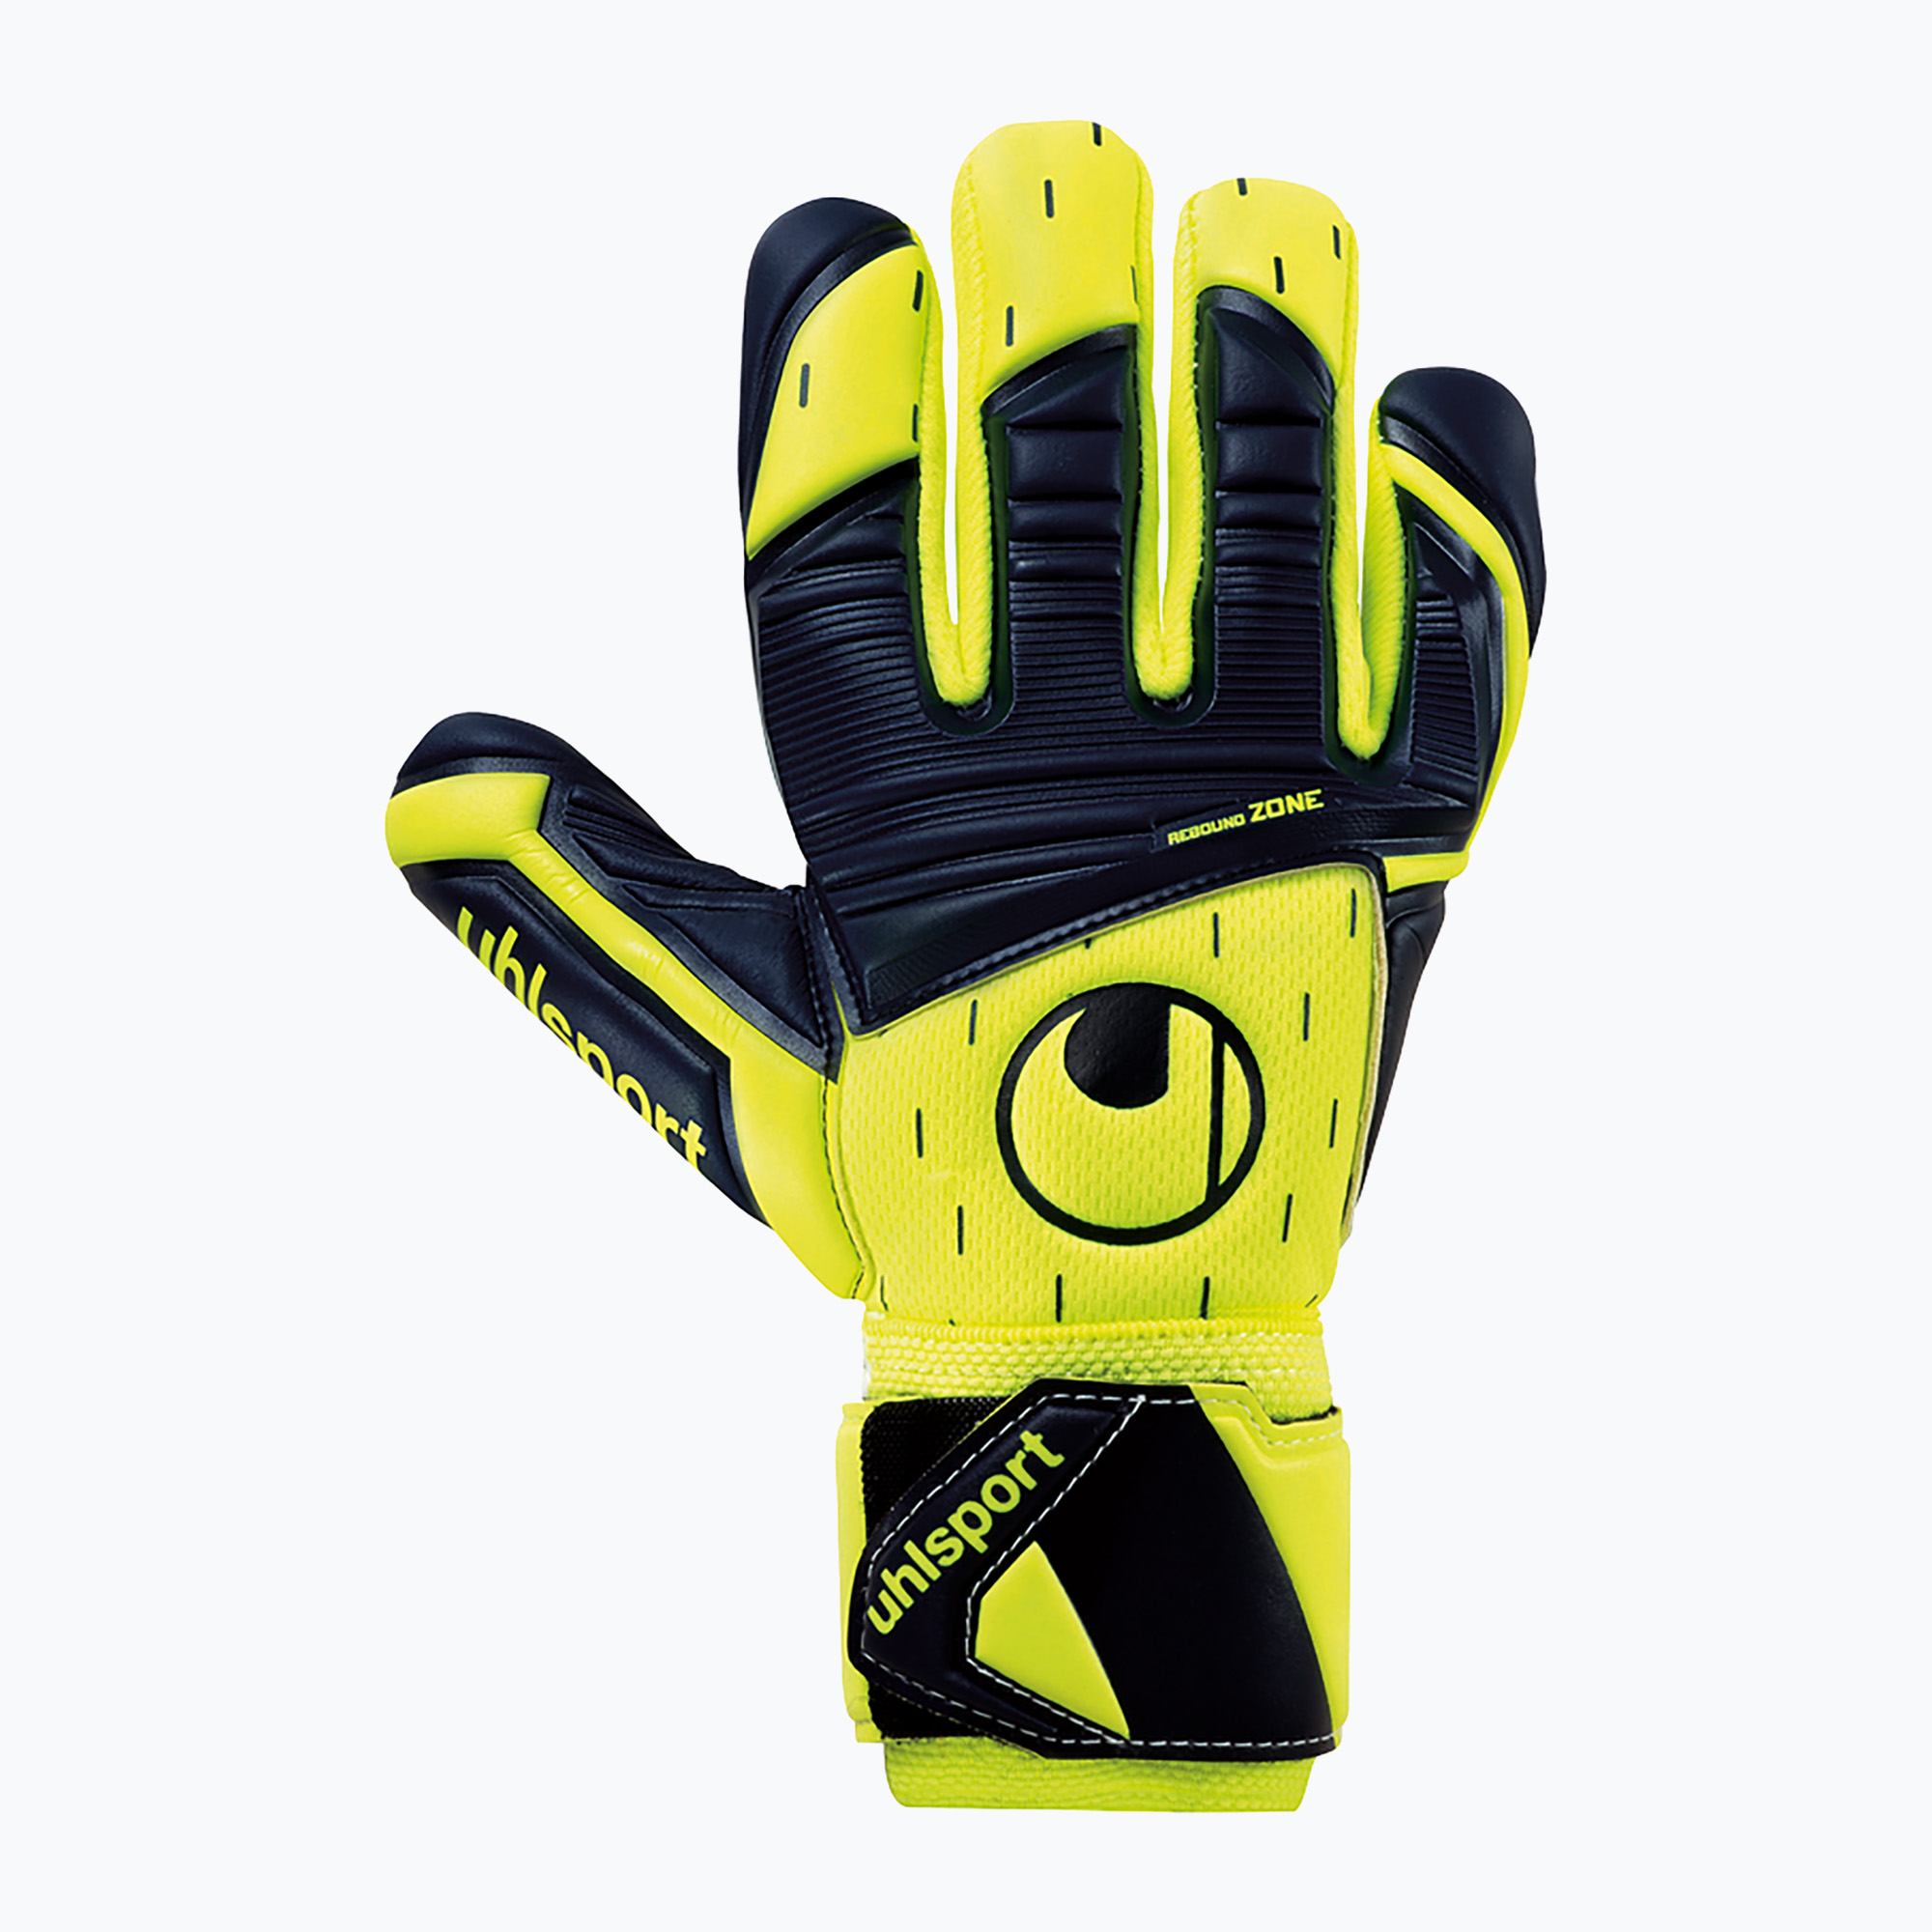 Uhlsport Classic Soft Hn Comp вратарски ръкавици черни/сини/бели